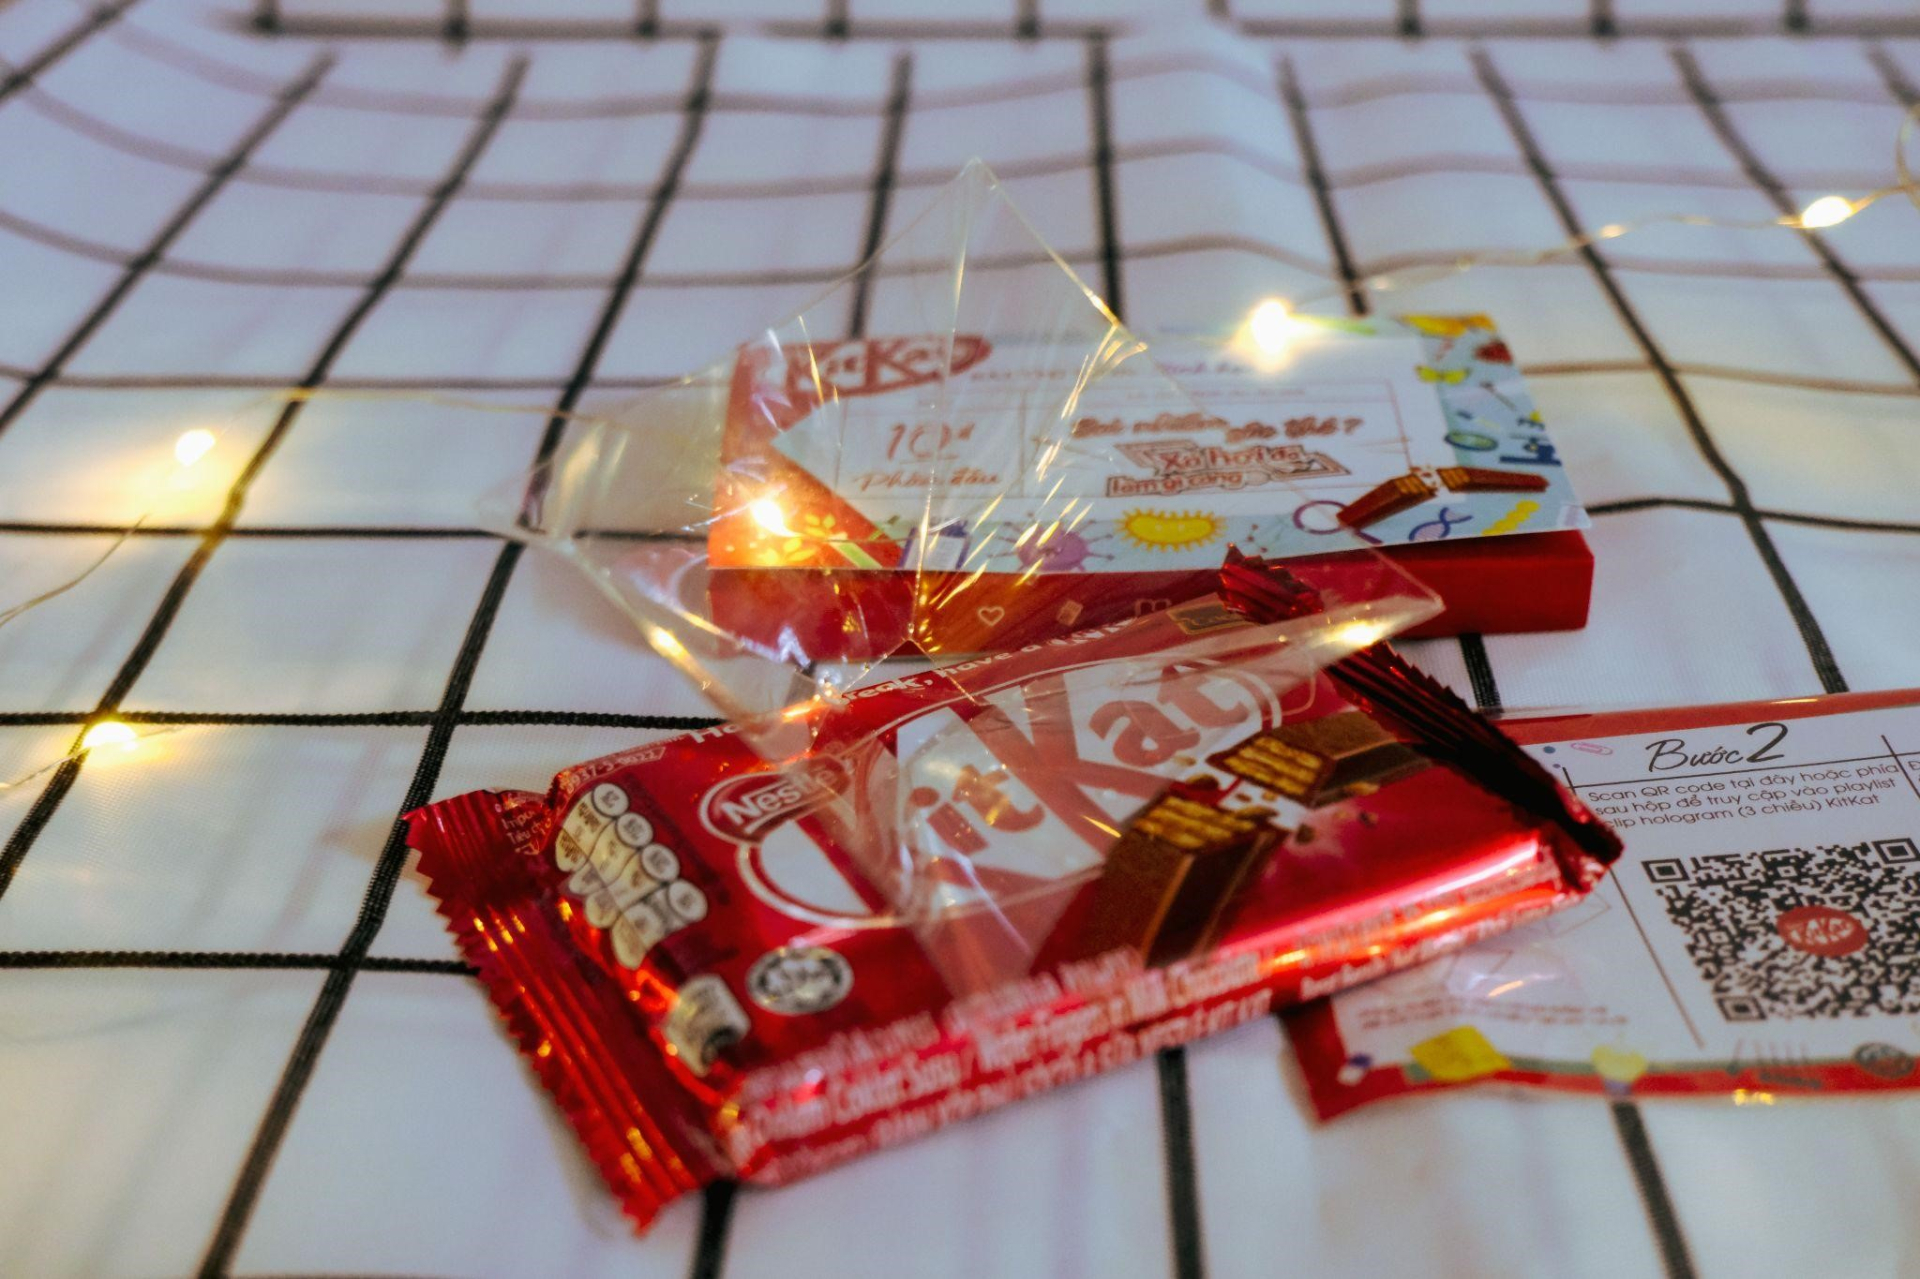 Săn lùng KitKat phiên bản giới hạn cho 6 môn thi THPT, cùng lời chúc từ Khánh Vy qua công nghệ Hologram mới lạ! - ảnh 6